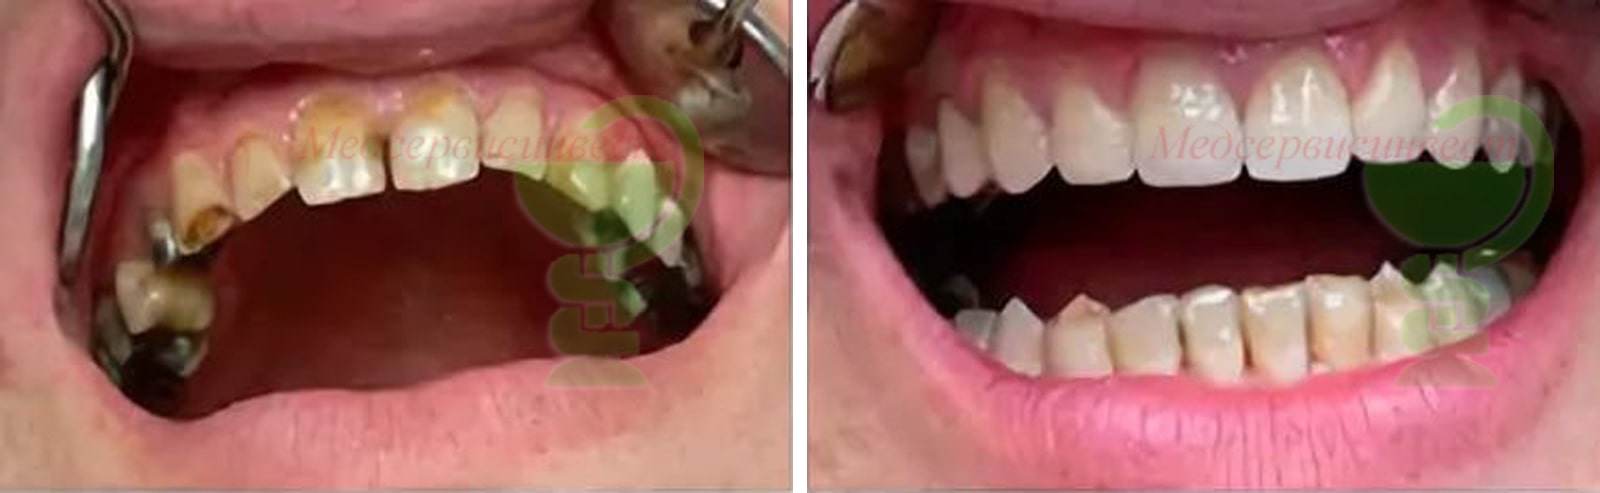 Зубные протезы, металлокерамическая коронка на зуб цена фото